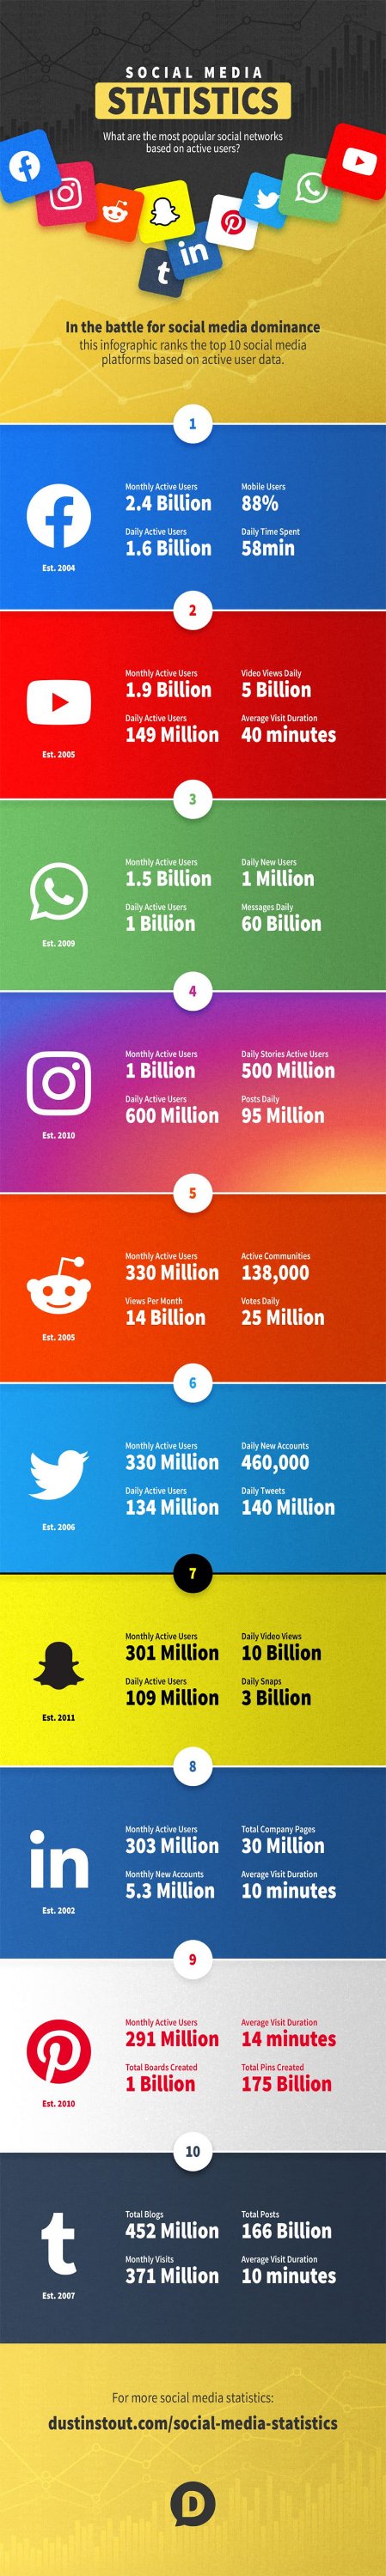 50 social media stats to help you choose the right platform for your business1328464752 50 statistiques pour votre stratégie de Réseaux Sociaux en 2019 [Infographie]